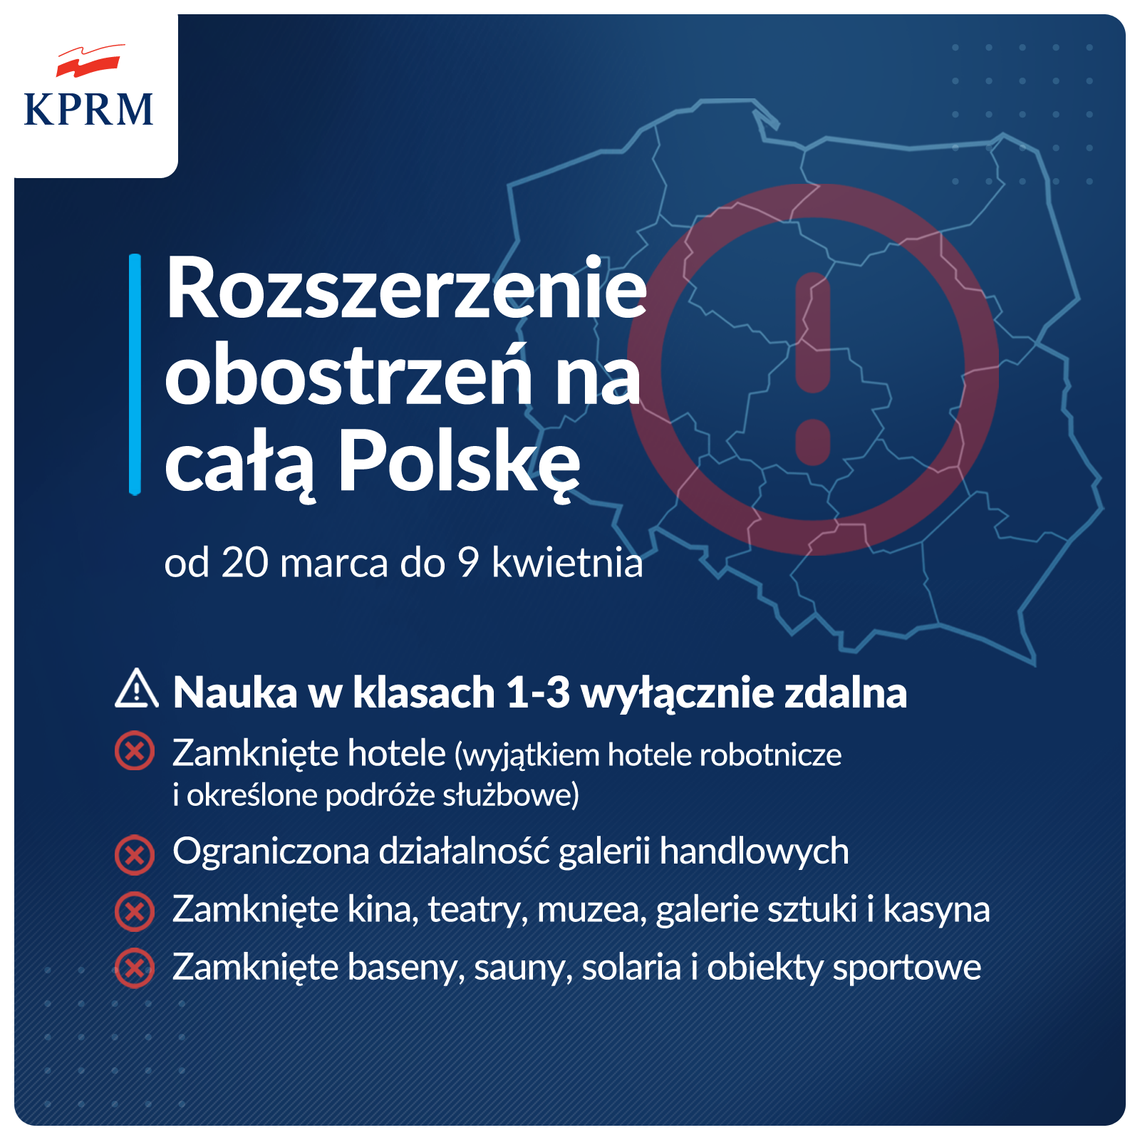 Od dziś w całej Polsce obowiązują rozszerzone zasady bezpieczeństwa